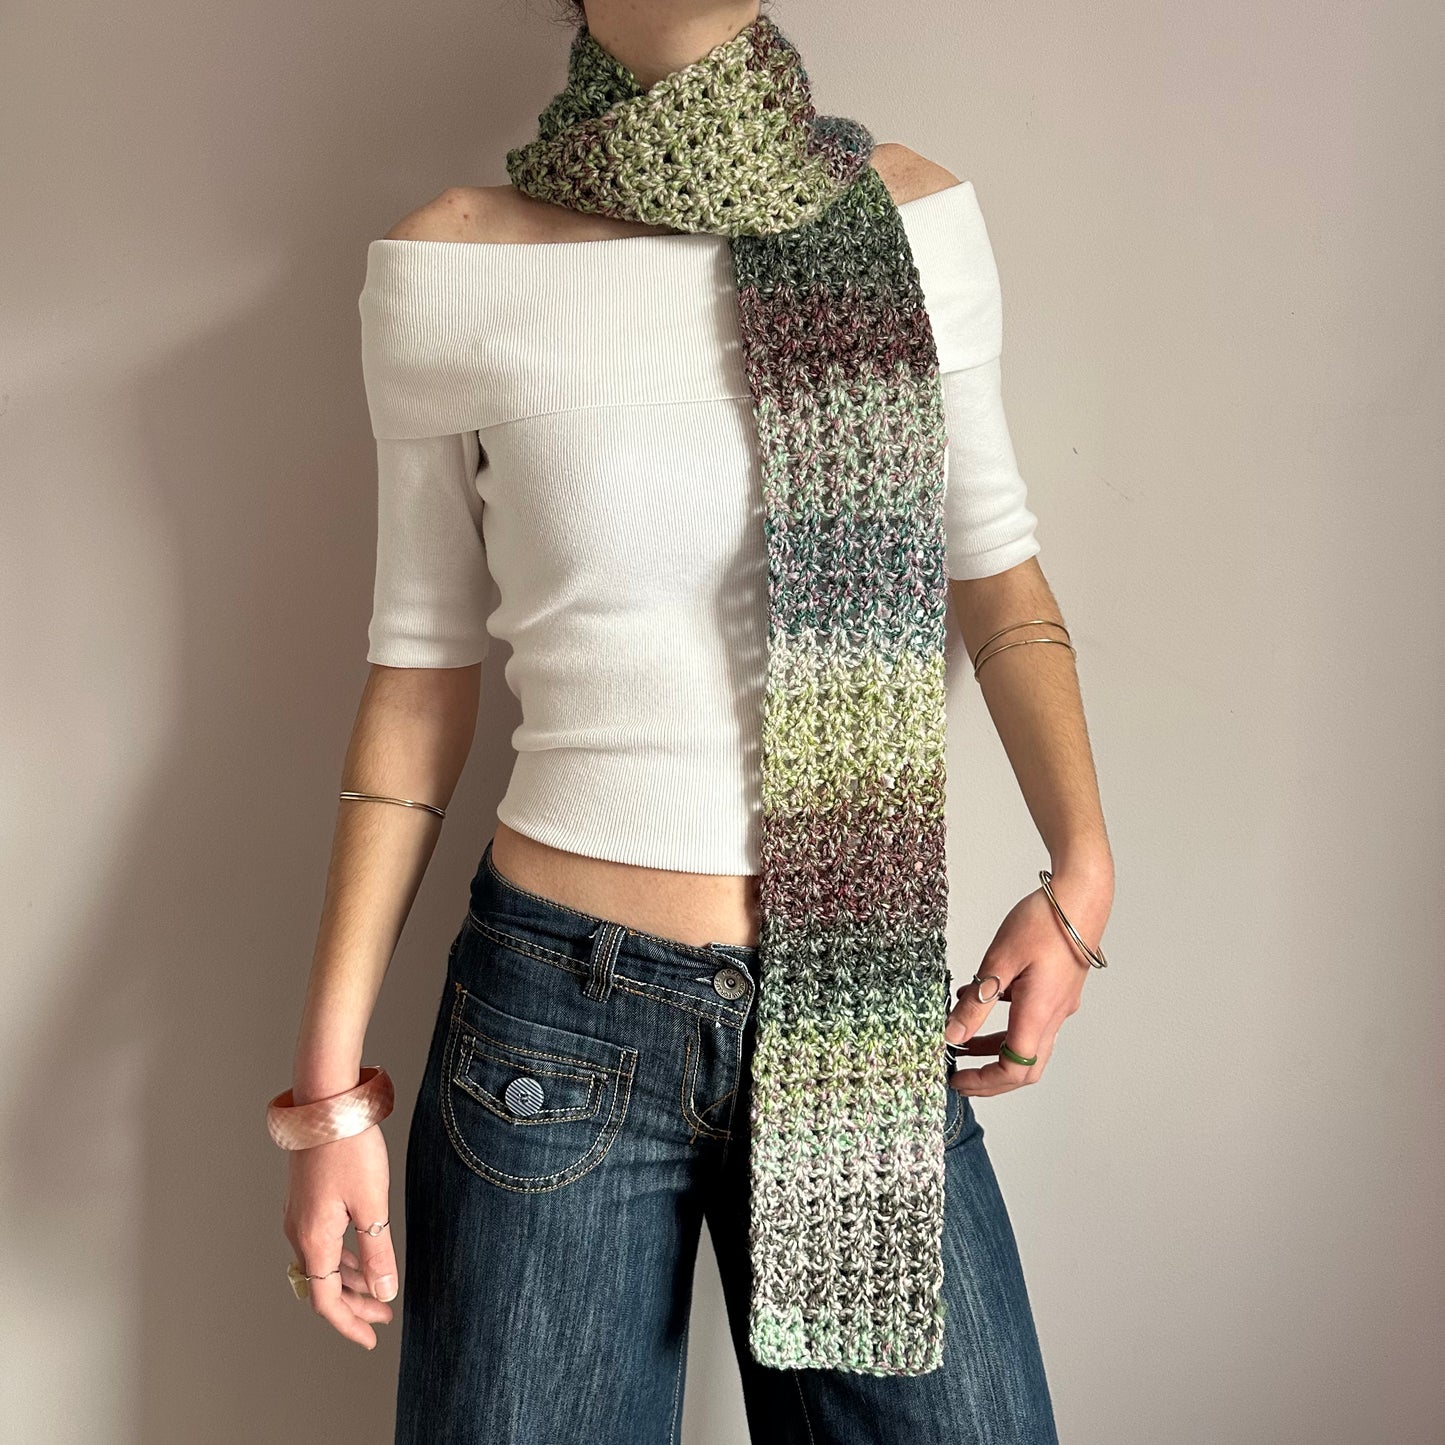 Handmade dusky shades crochet scarf